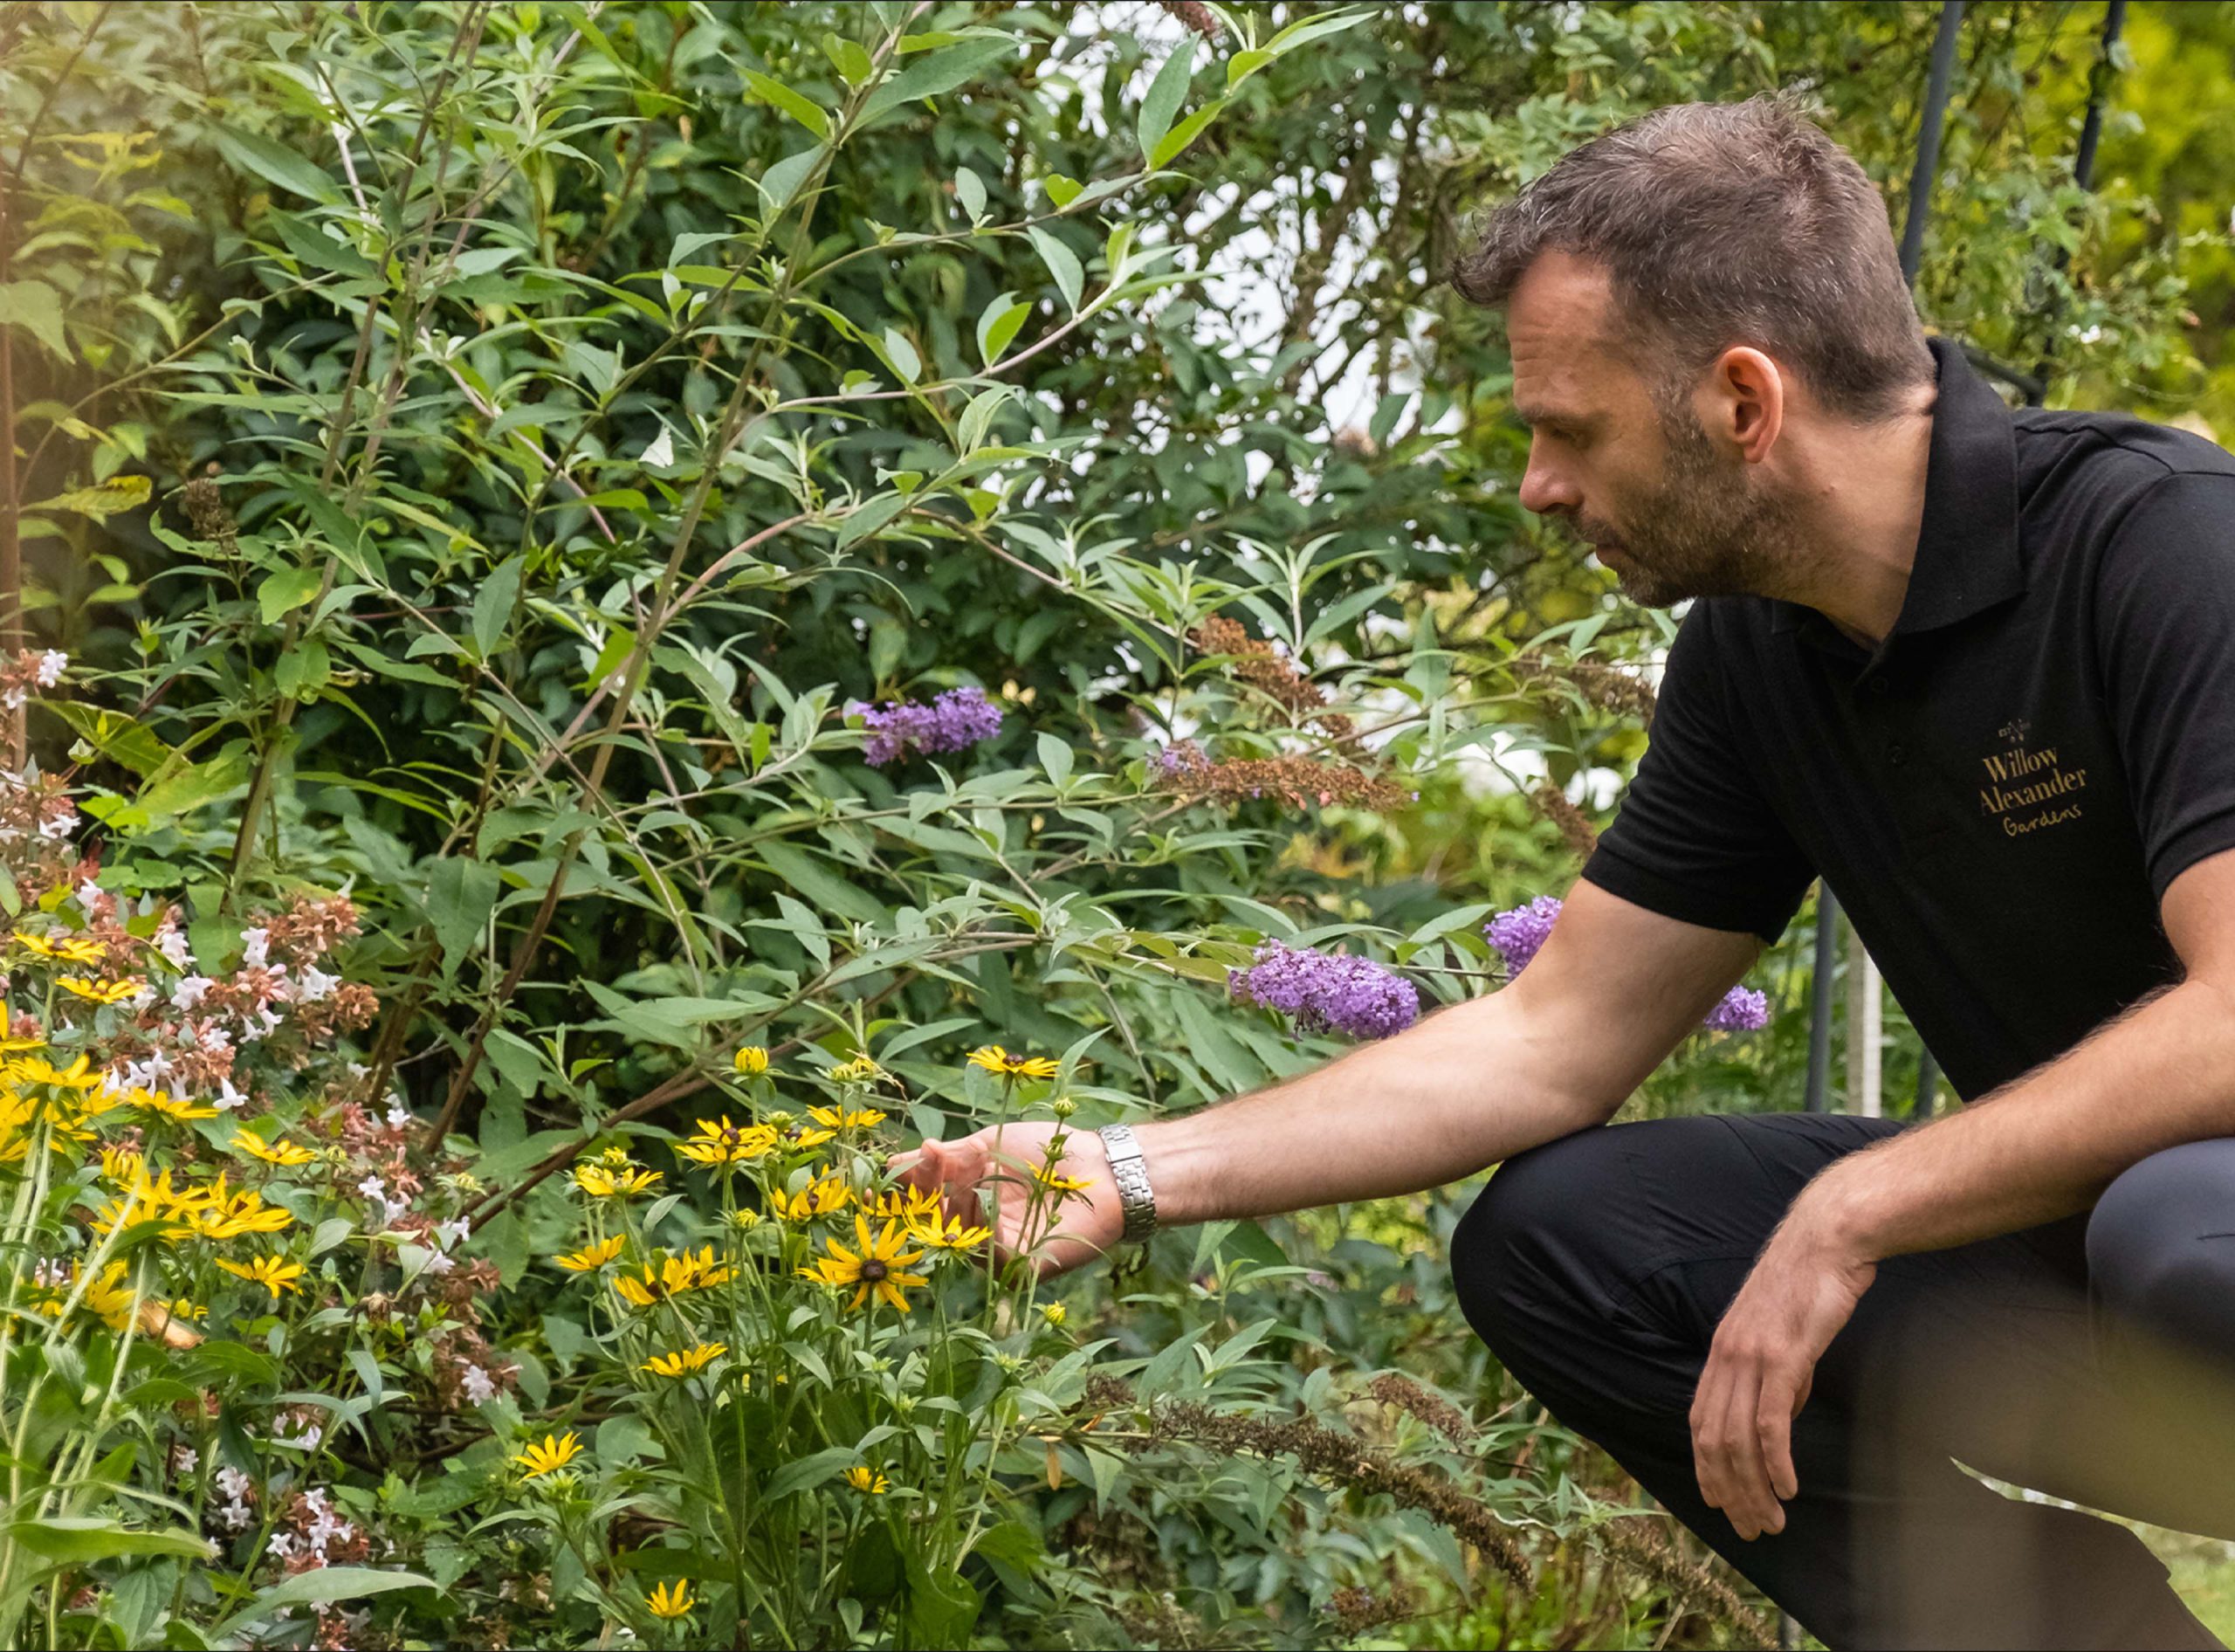 A Willow Alexander Gardens team member assessing the flowers during a gardening job